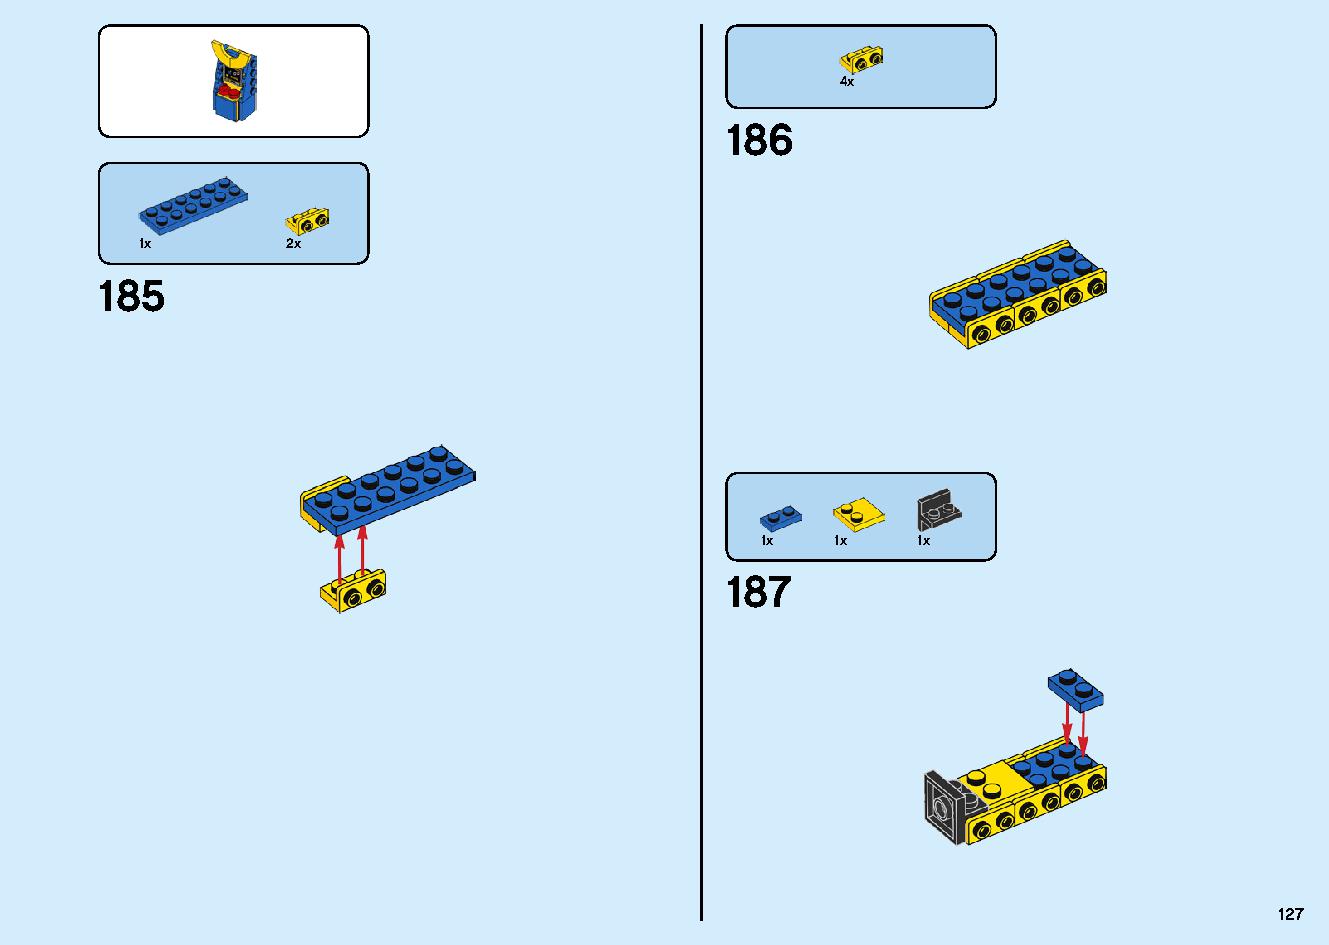 マッドキング神殿 71712 レゴの商品情報 レゴの説明書・組立方法 127 page